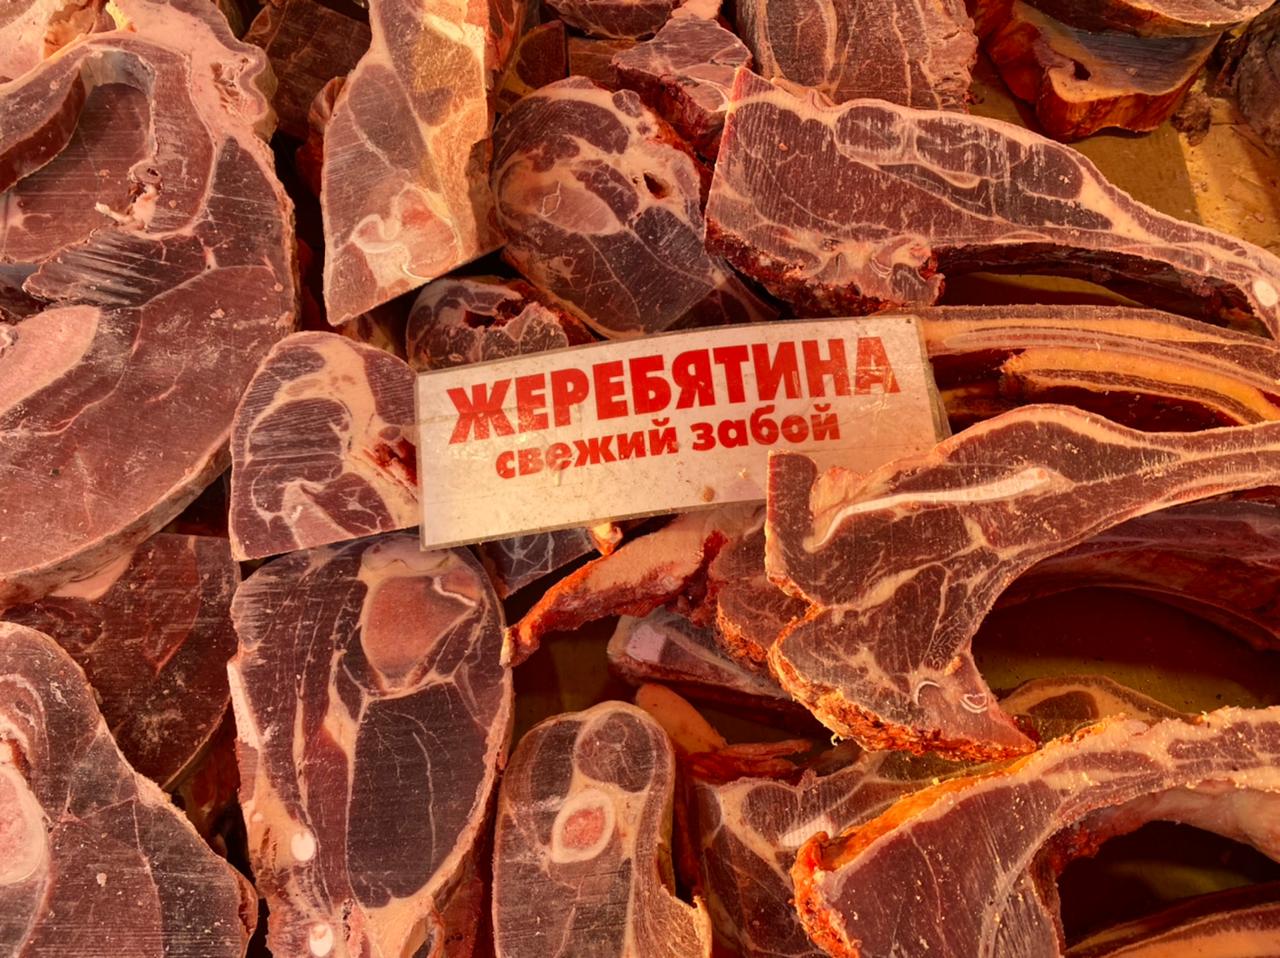 Сколько стоят мясо, рыба и овощи на Крестьянском рынке в Якутске